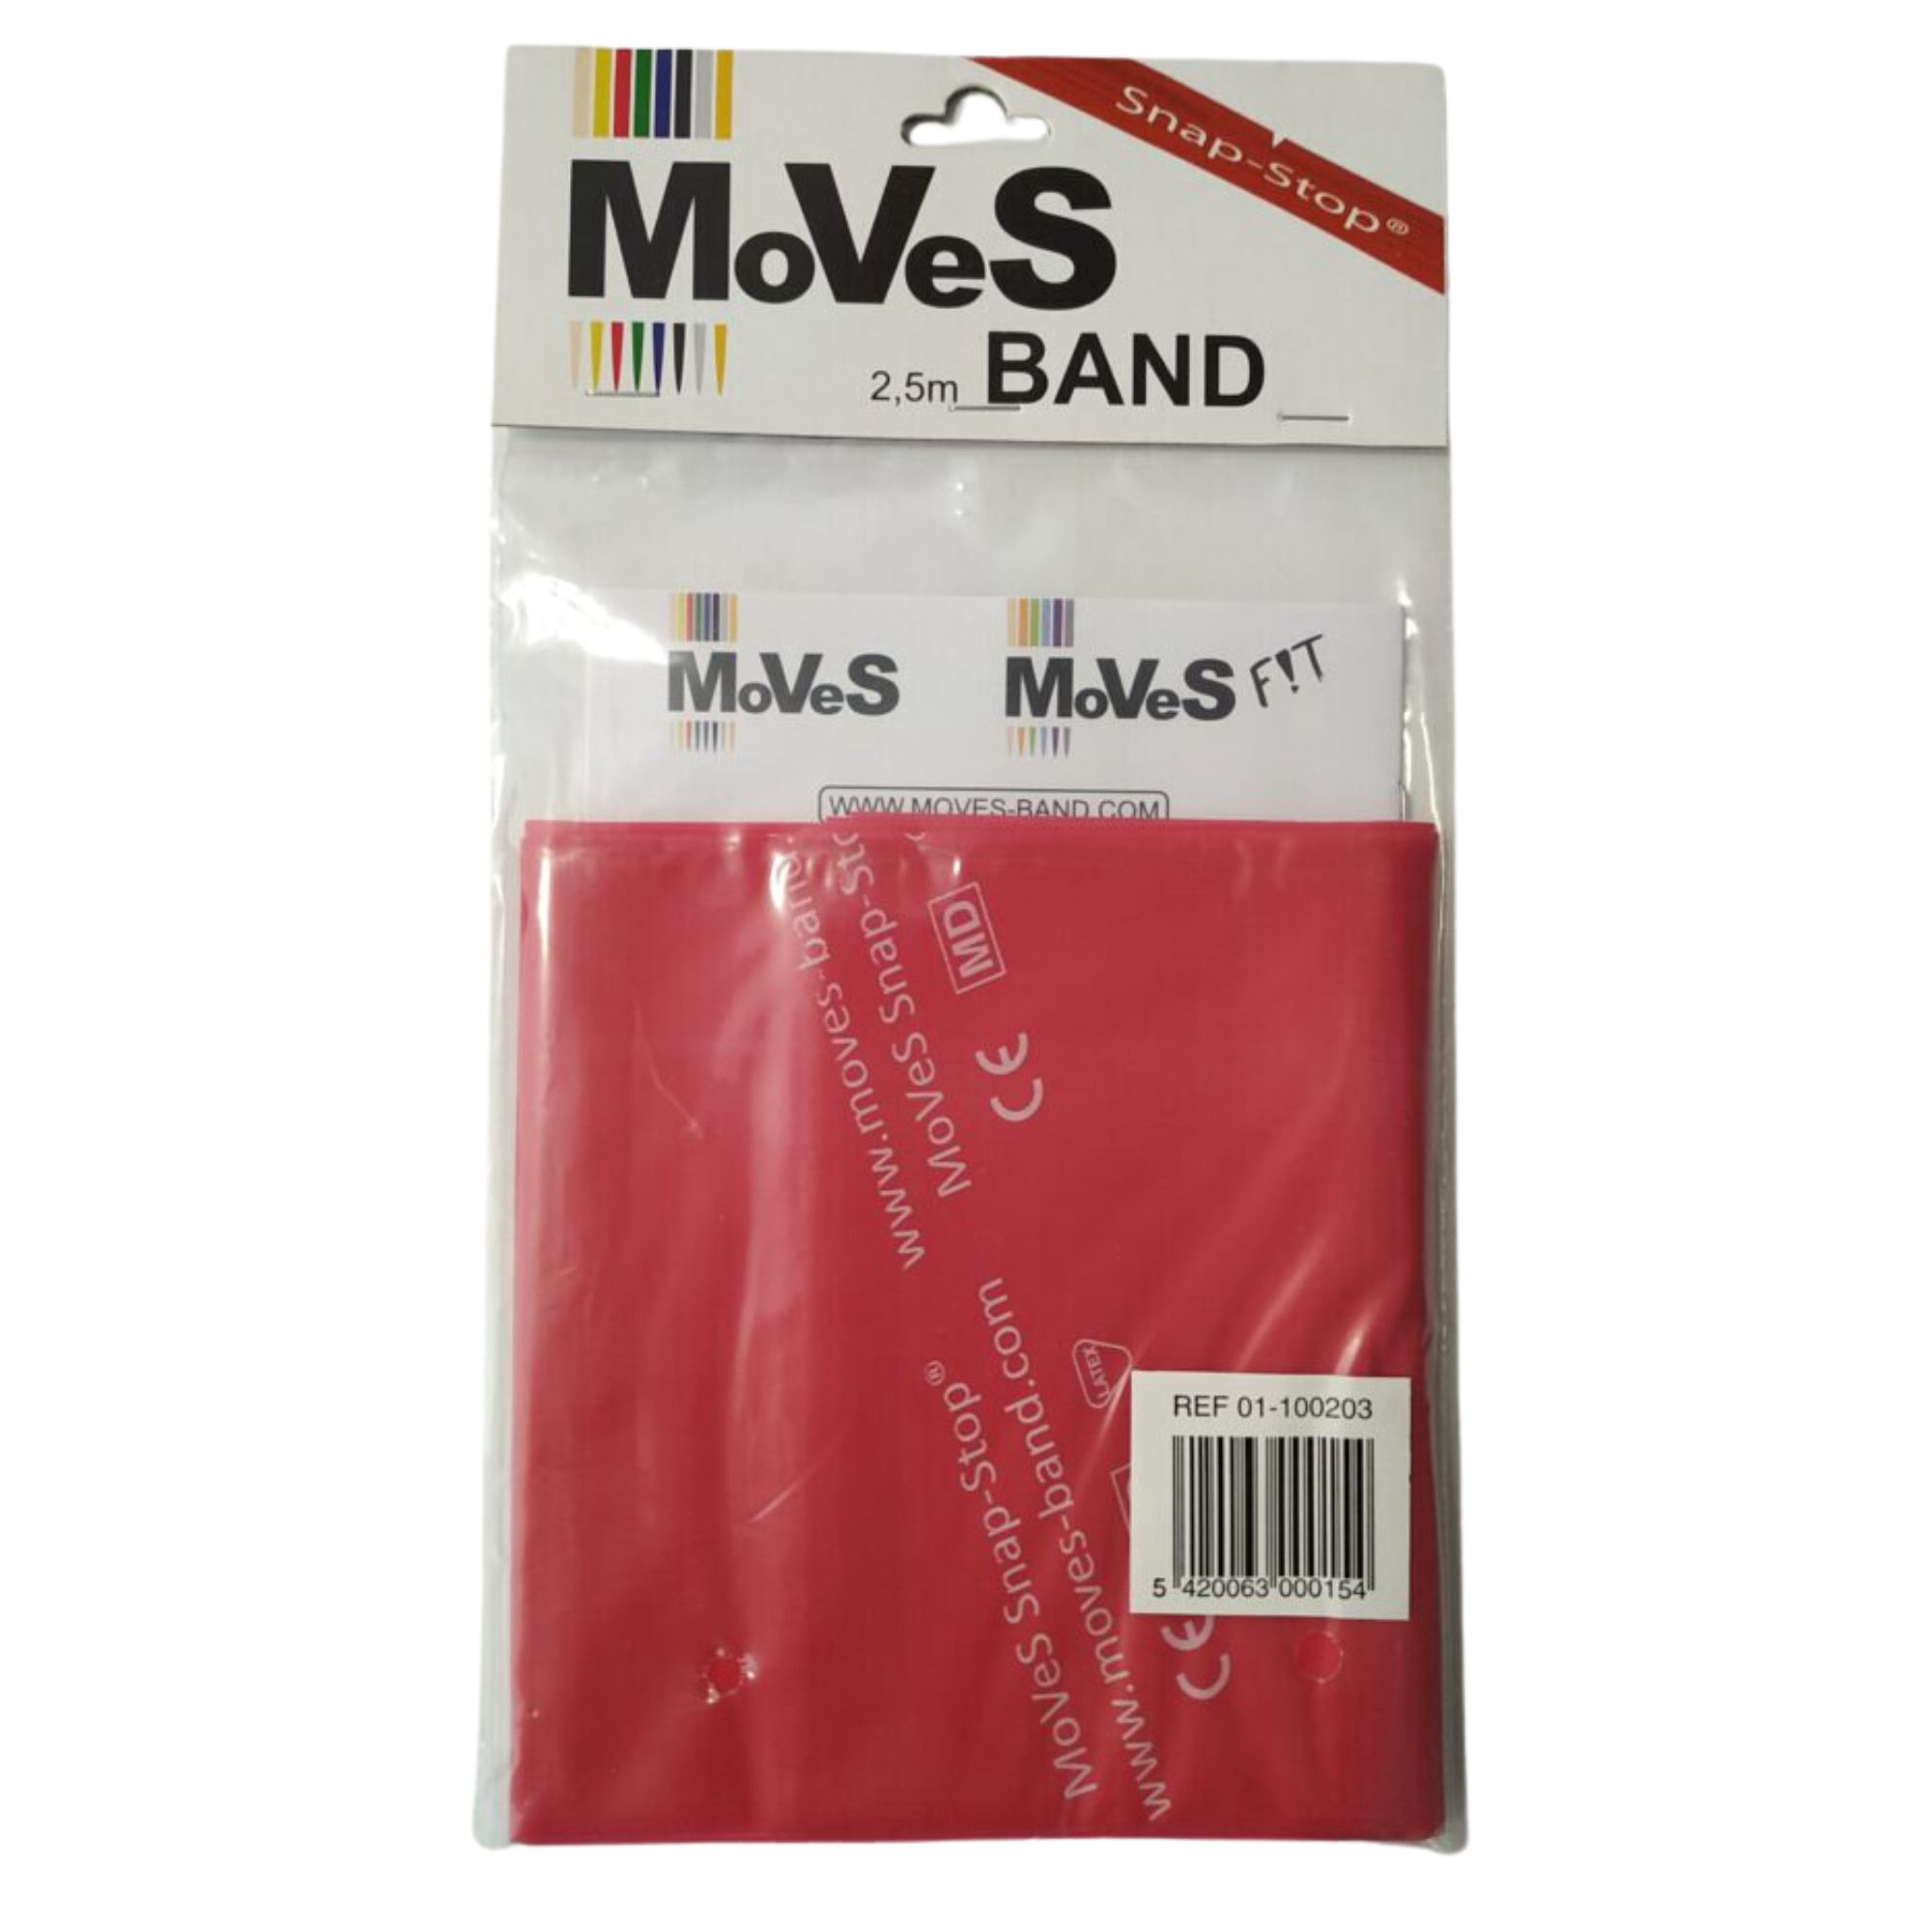 Brug MSD-Band Flad Træningselastik Medium 2,5 m Rød (10 Stk) til en forbedret oplevelse